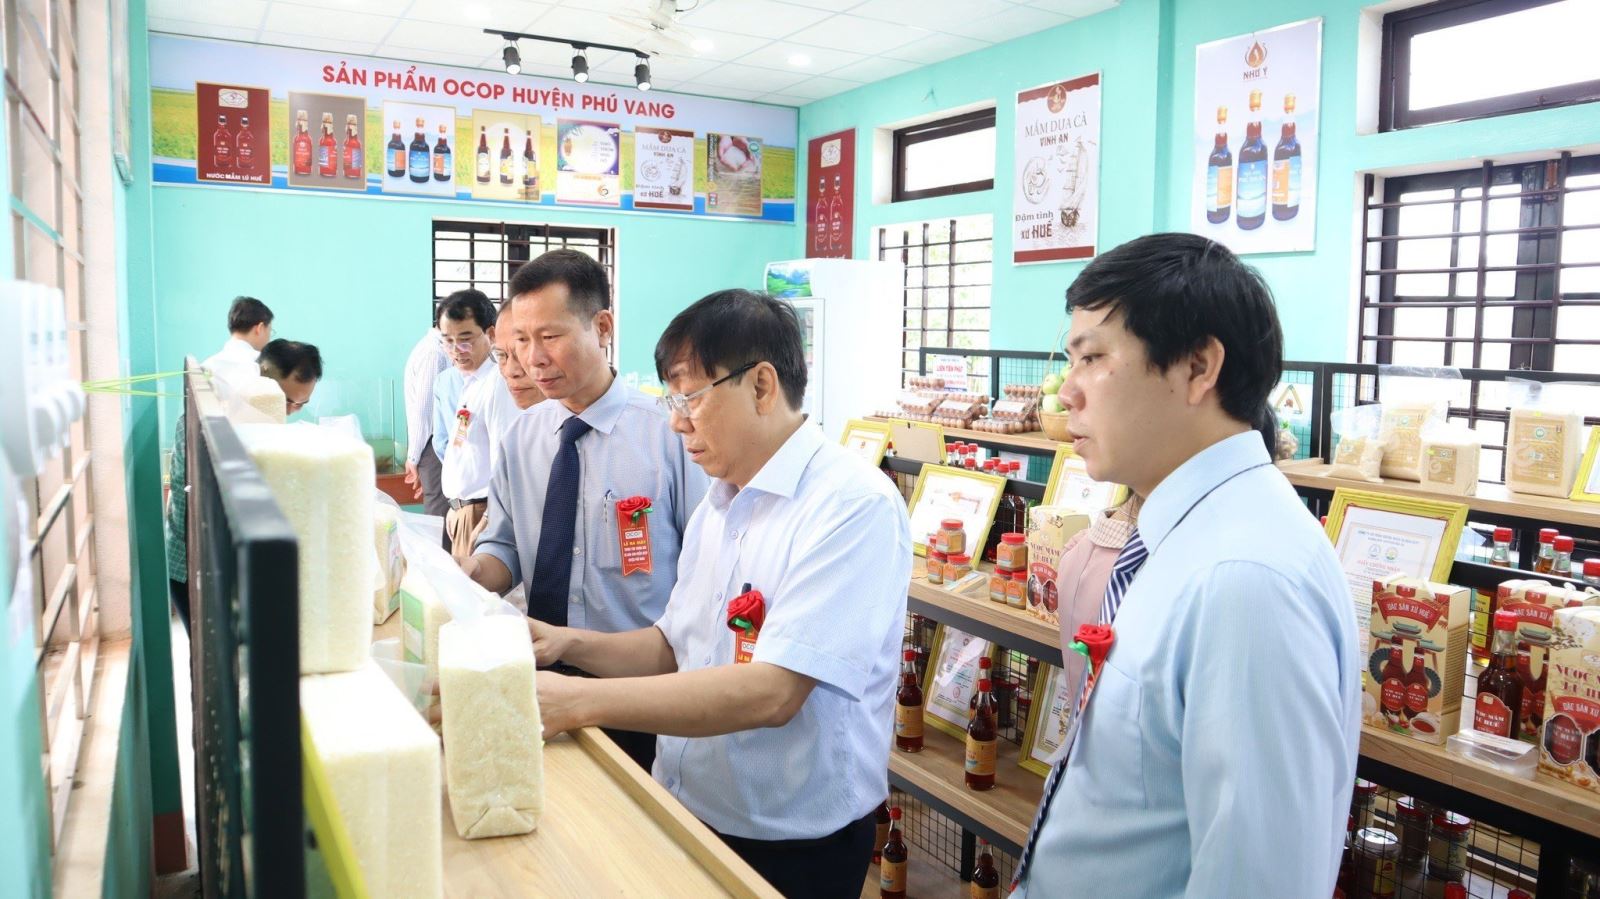 Các sản phẩm được giới thiệu, trưng bày và bán tại gian hàng gồm các sản phẩm OCOP của huyện Phú Vang.